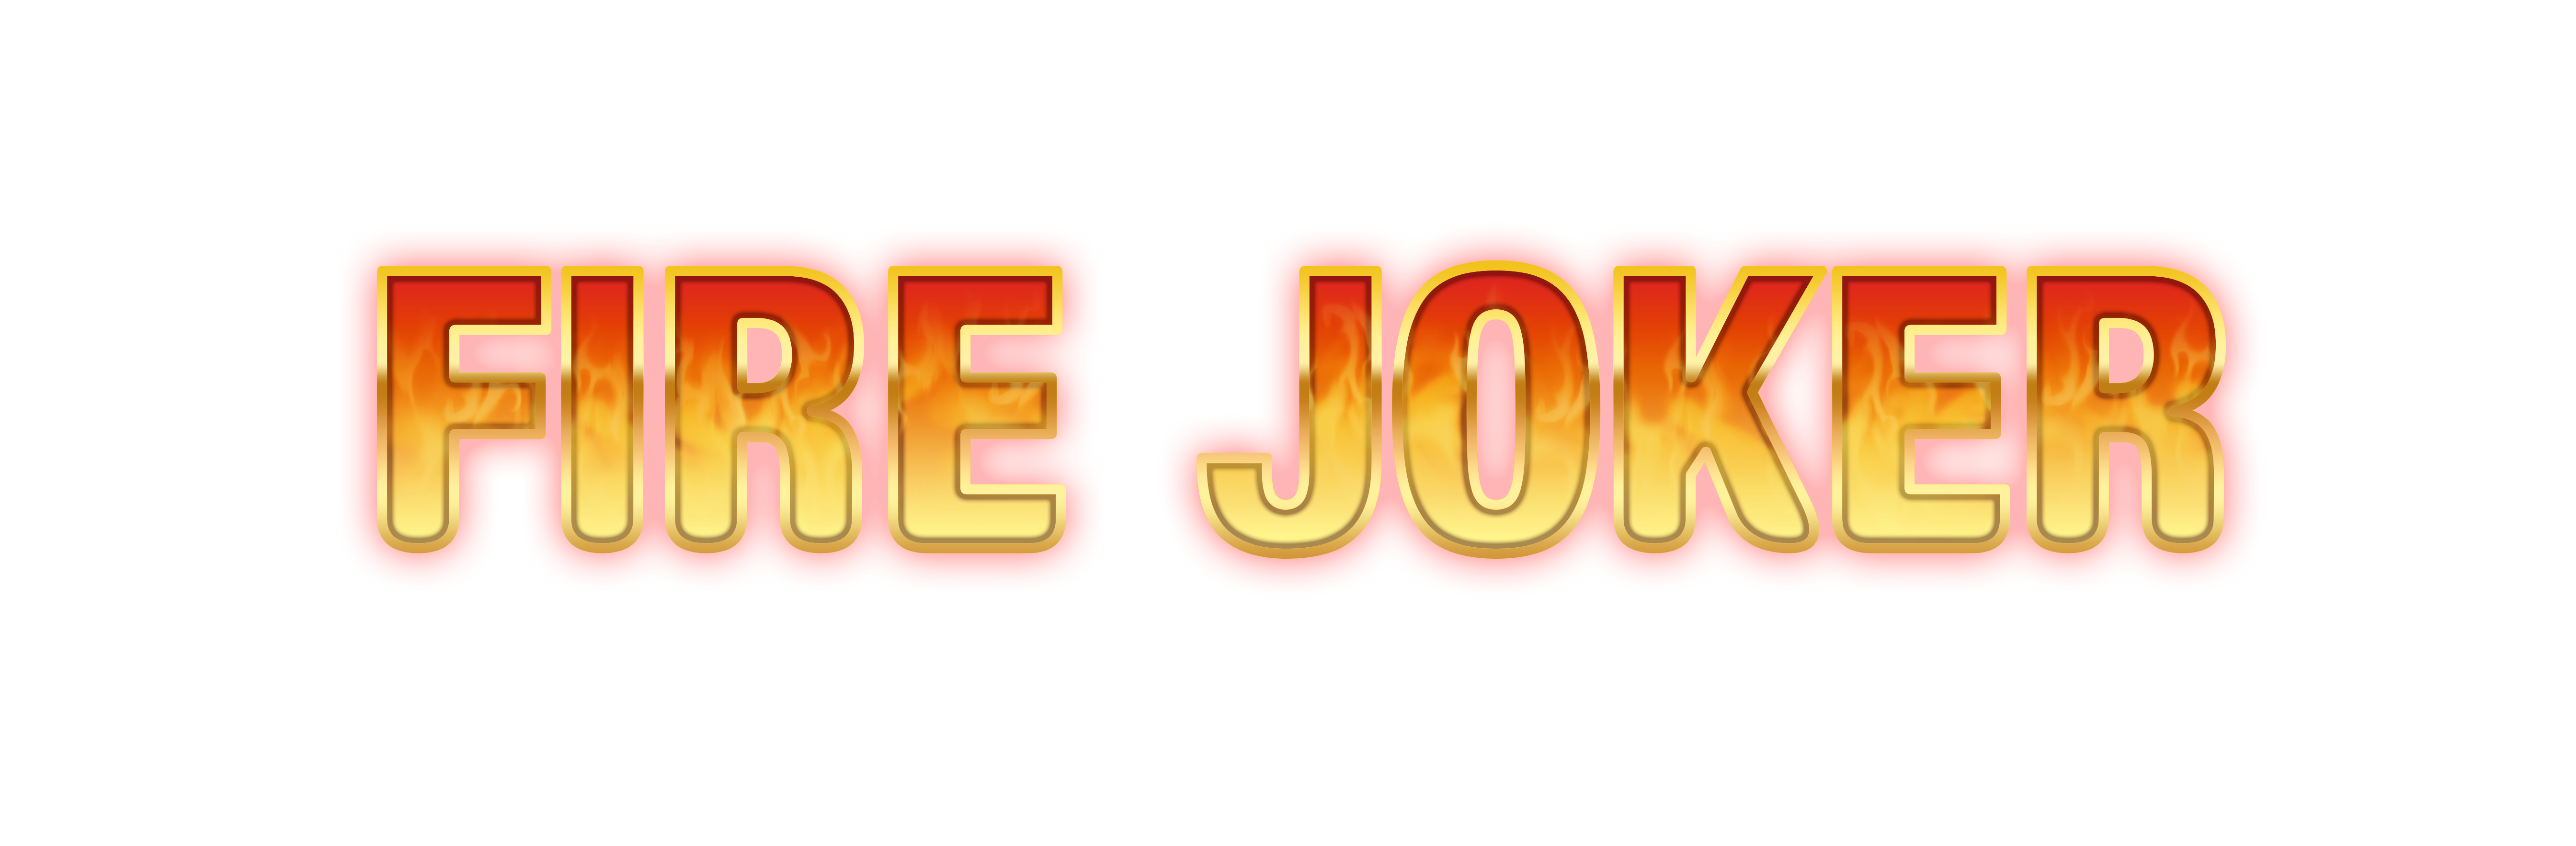 Fire joker logo